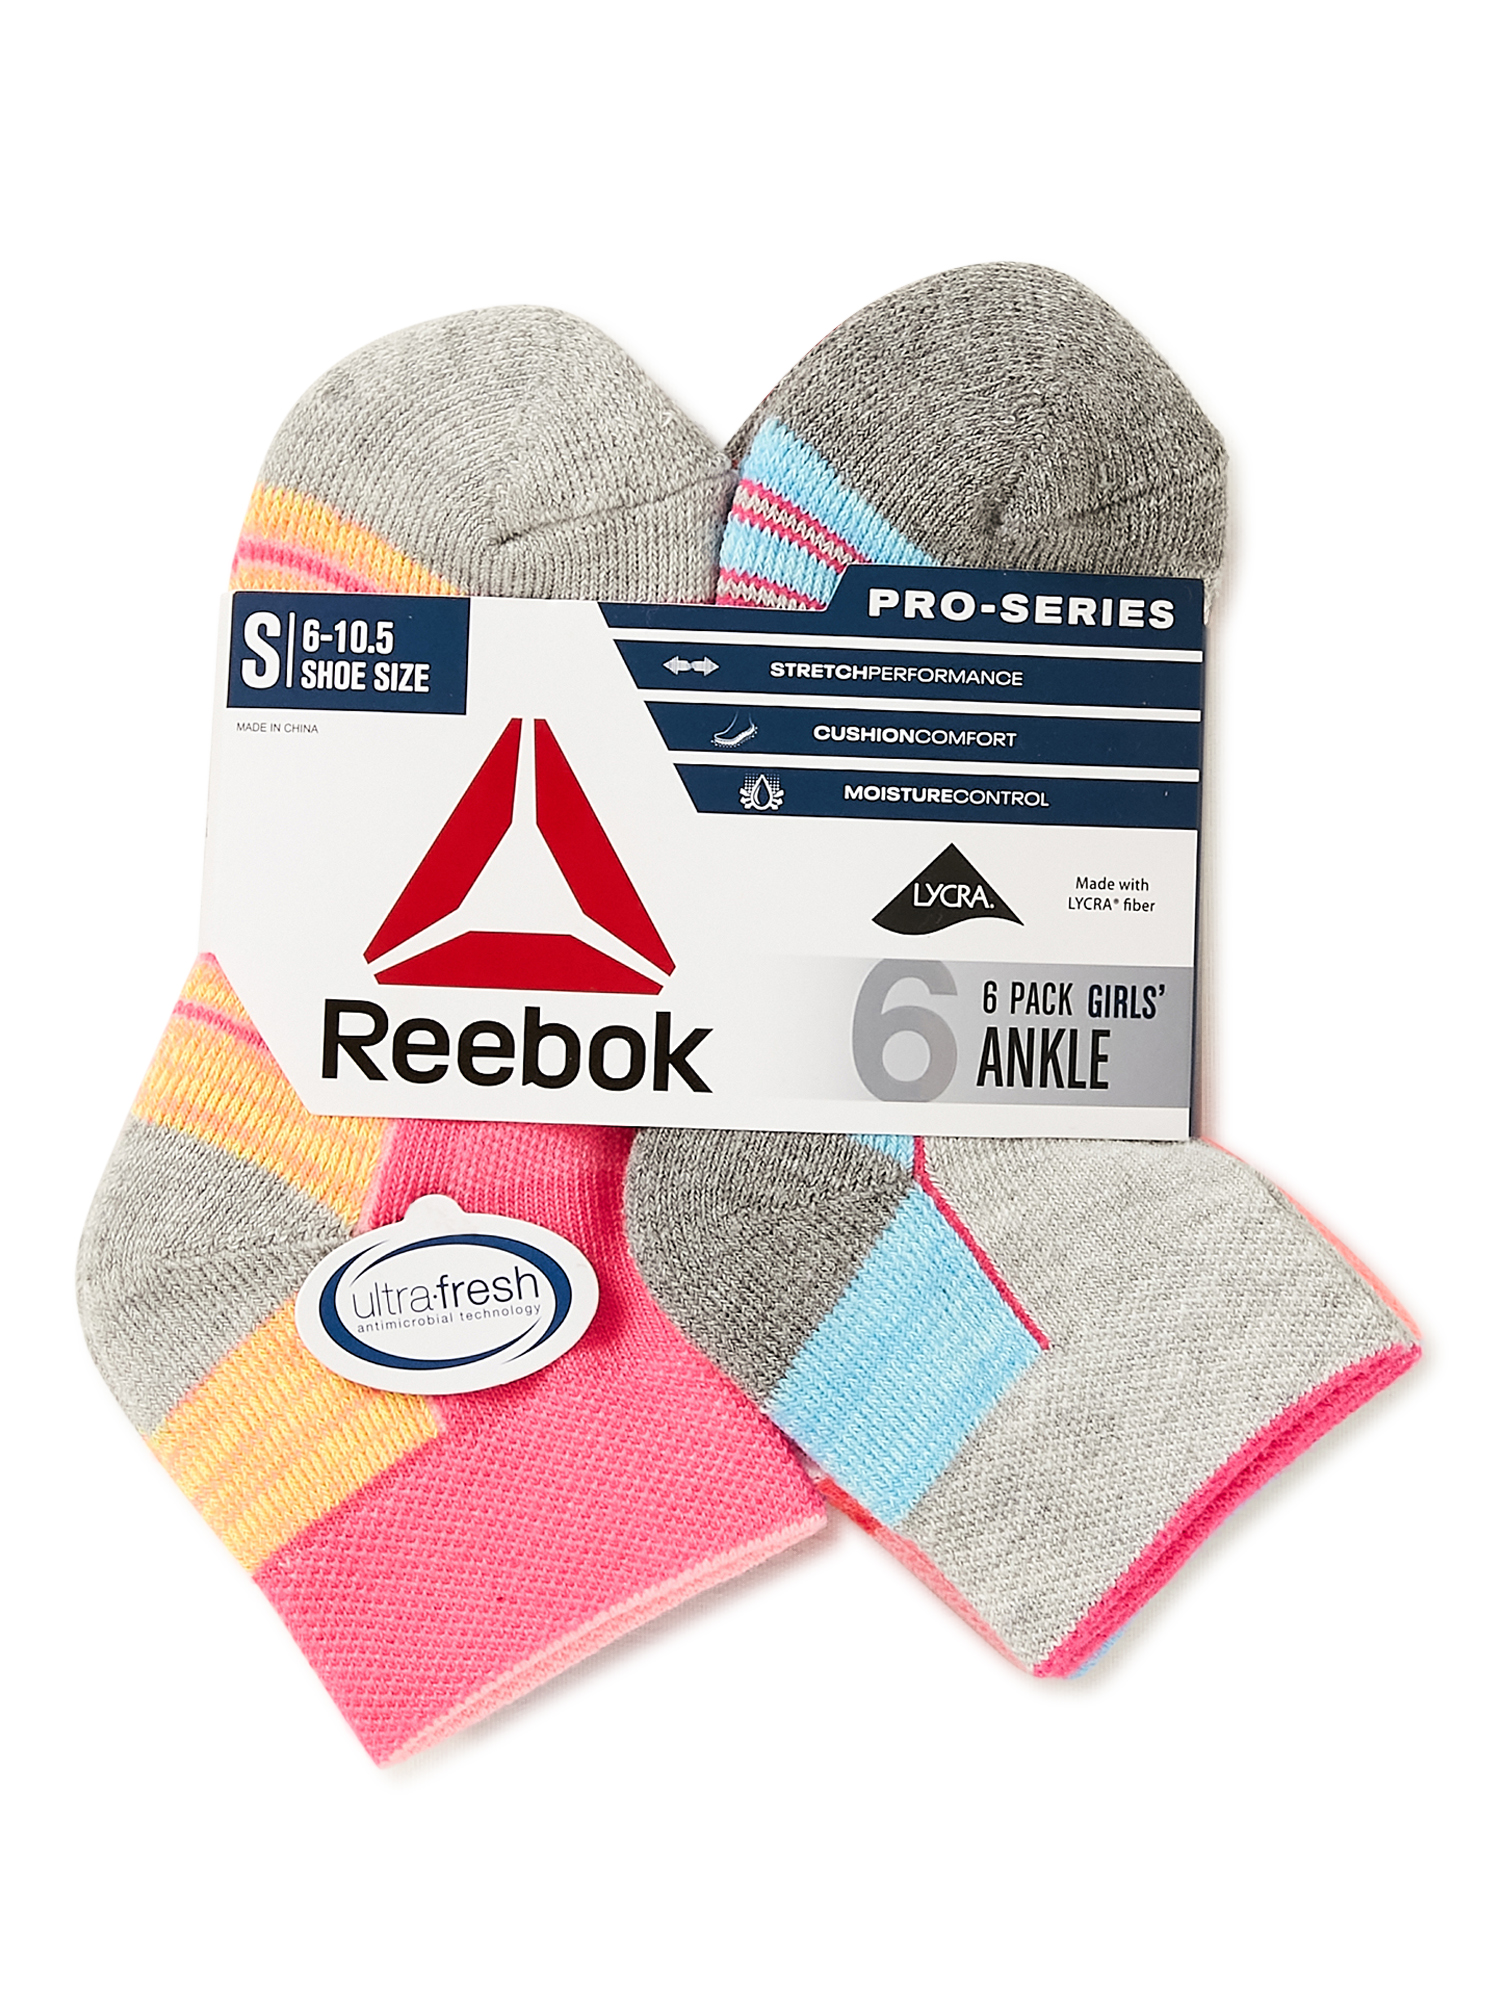 Reebok Girls Pros Series Ankle Socks, 6-Pack - image 3 of 9